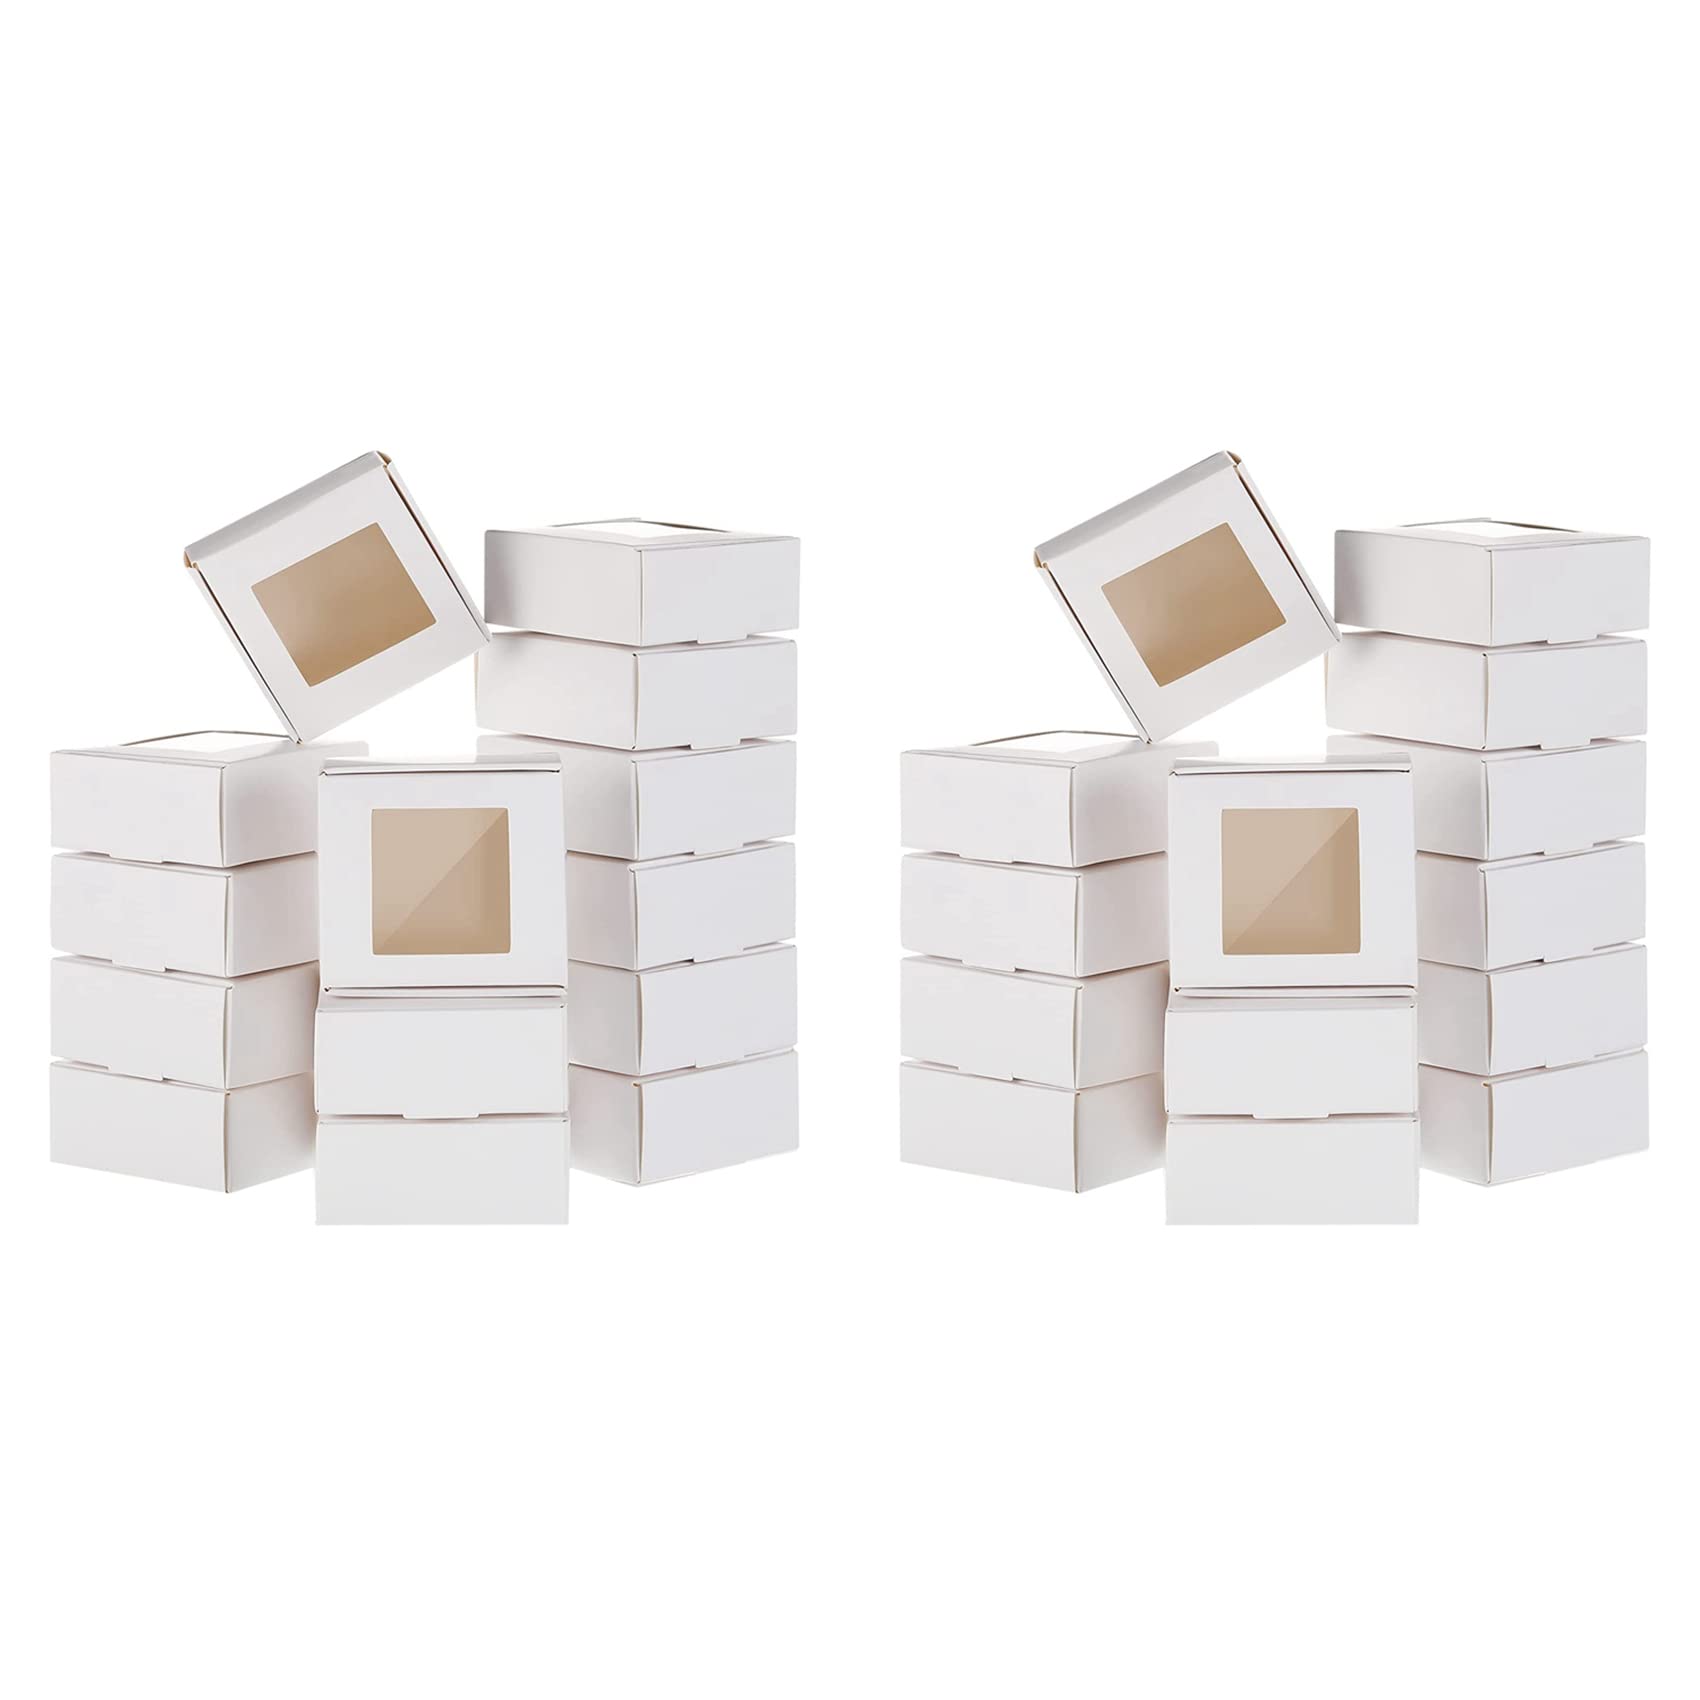 TPPIG 100 Stück Mini Kraftpapier Box mit Fenster Geschenk Verpackung Box Leckerli Box für hausgemachte Seife Leckerli Bäckerei Süßigkeiten (weiß)